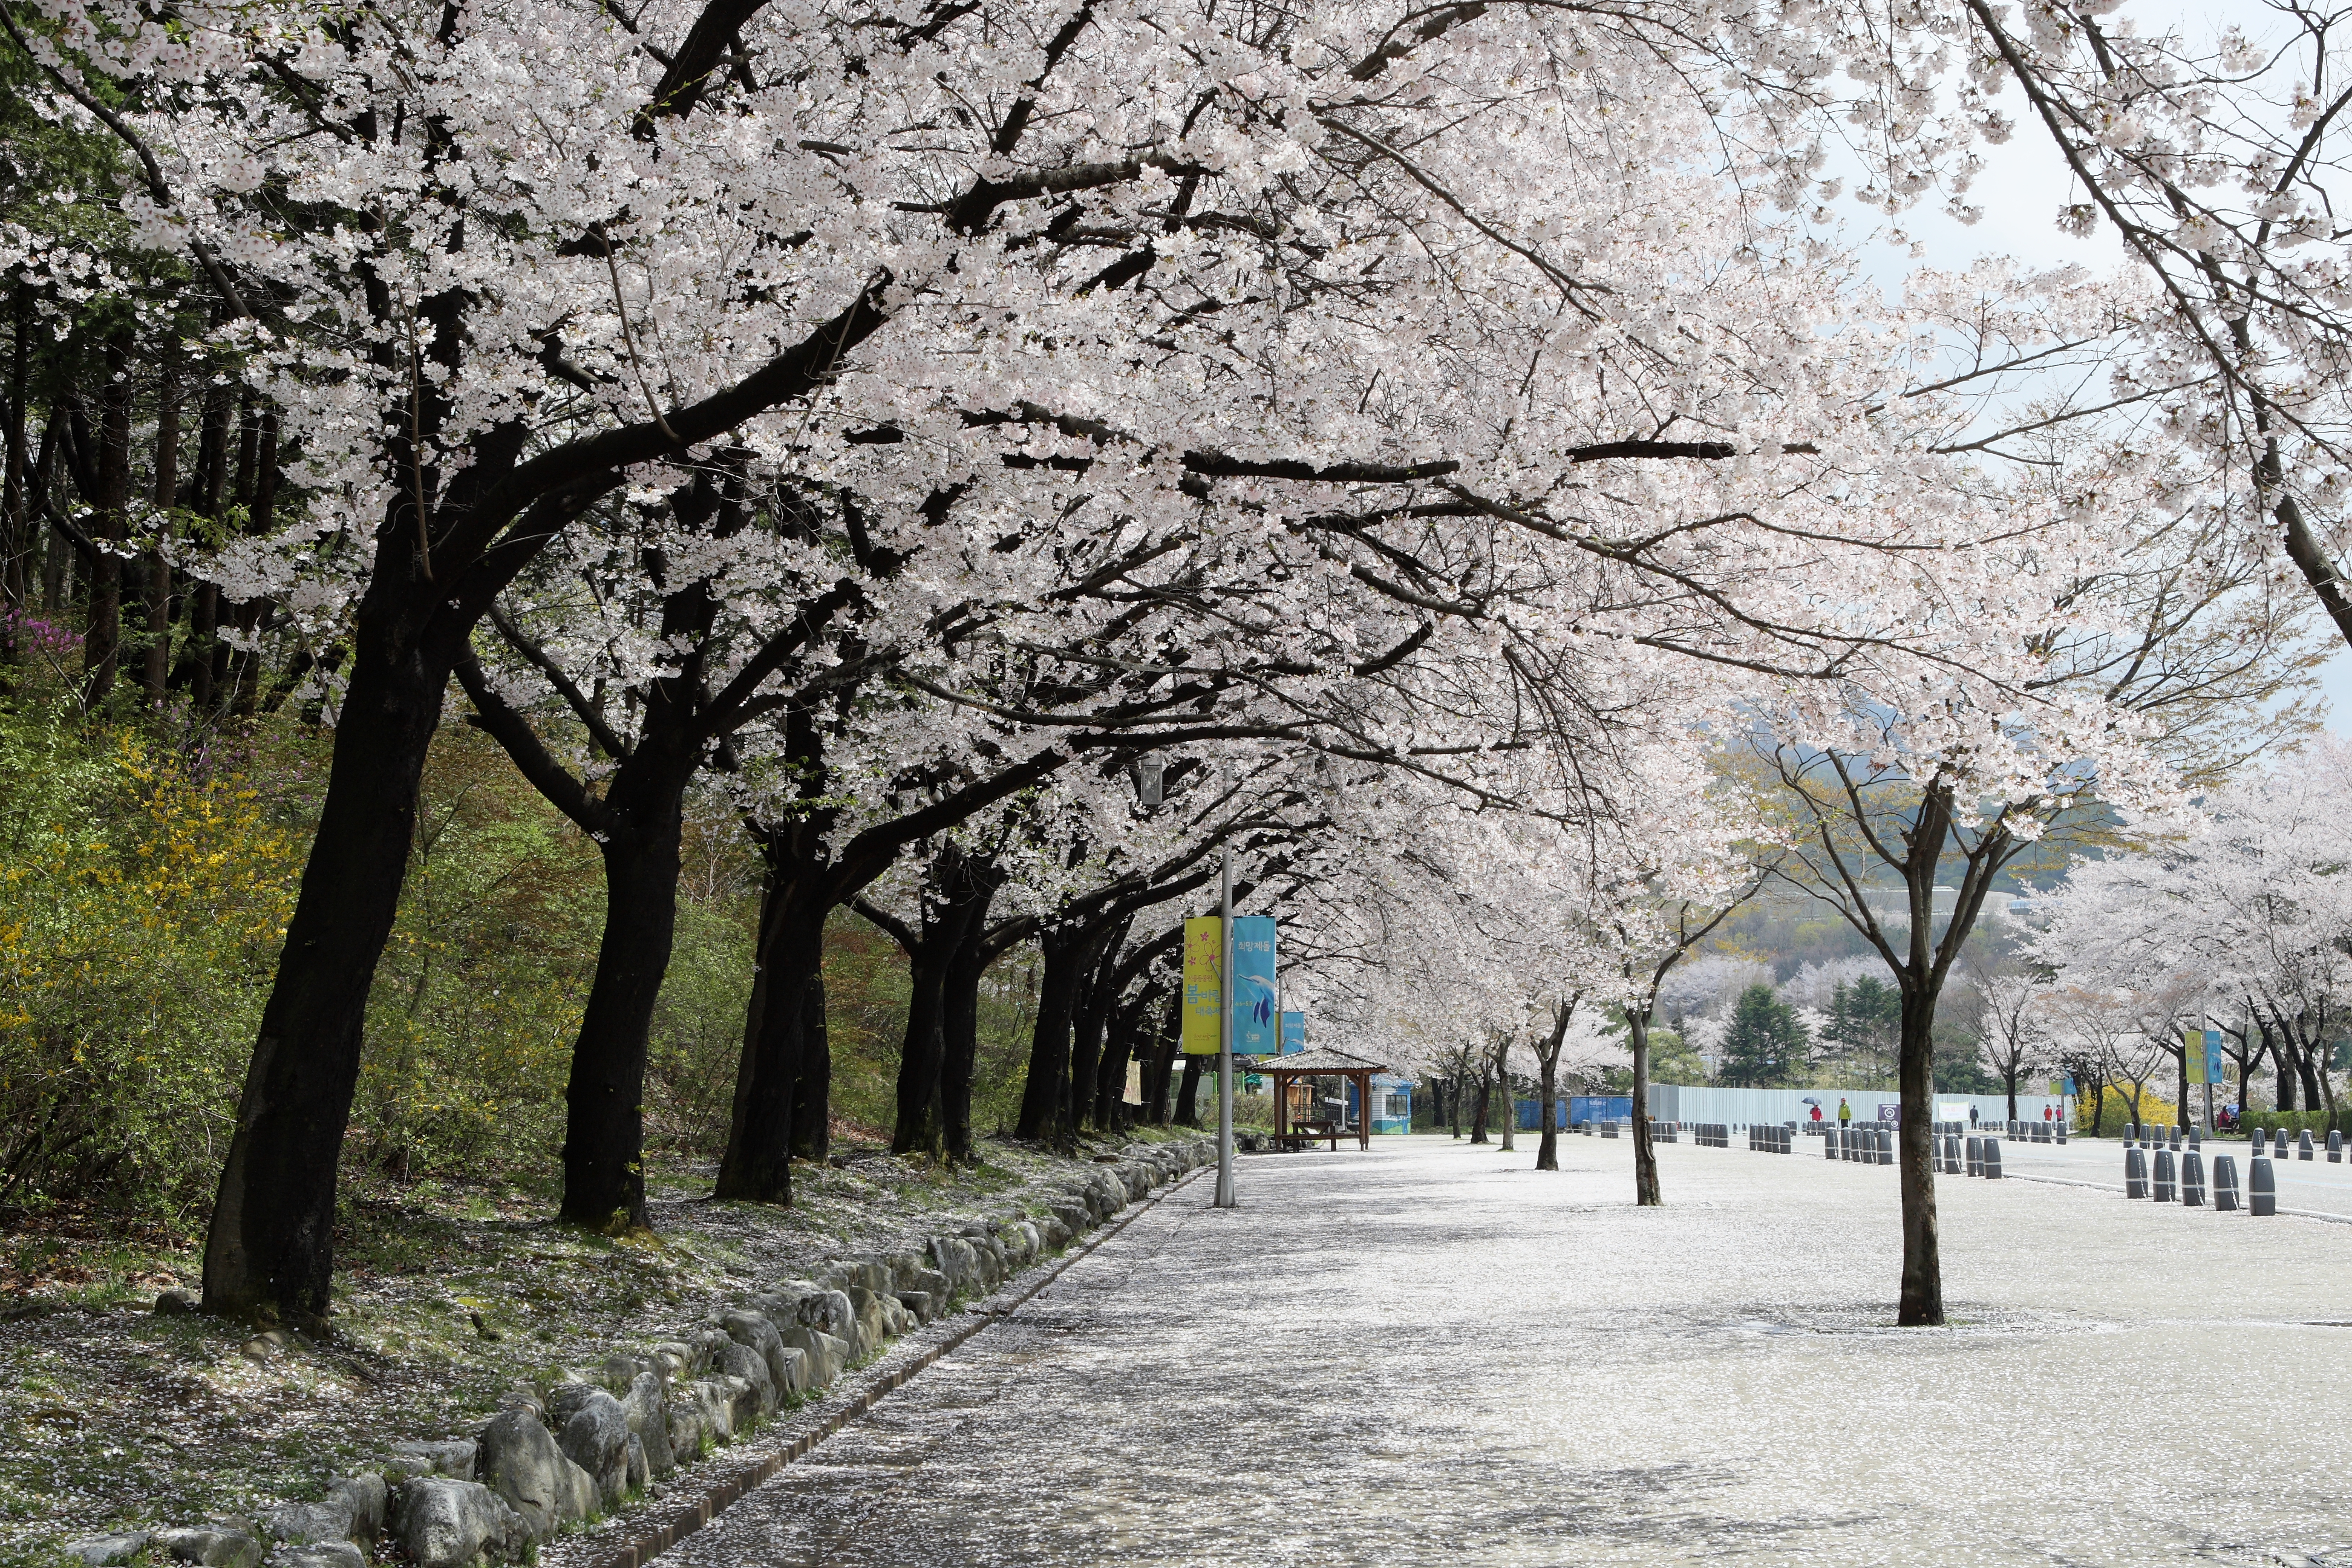  꽃비 내리는 서울대공원.